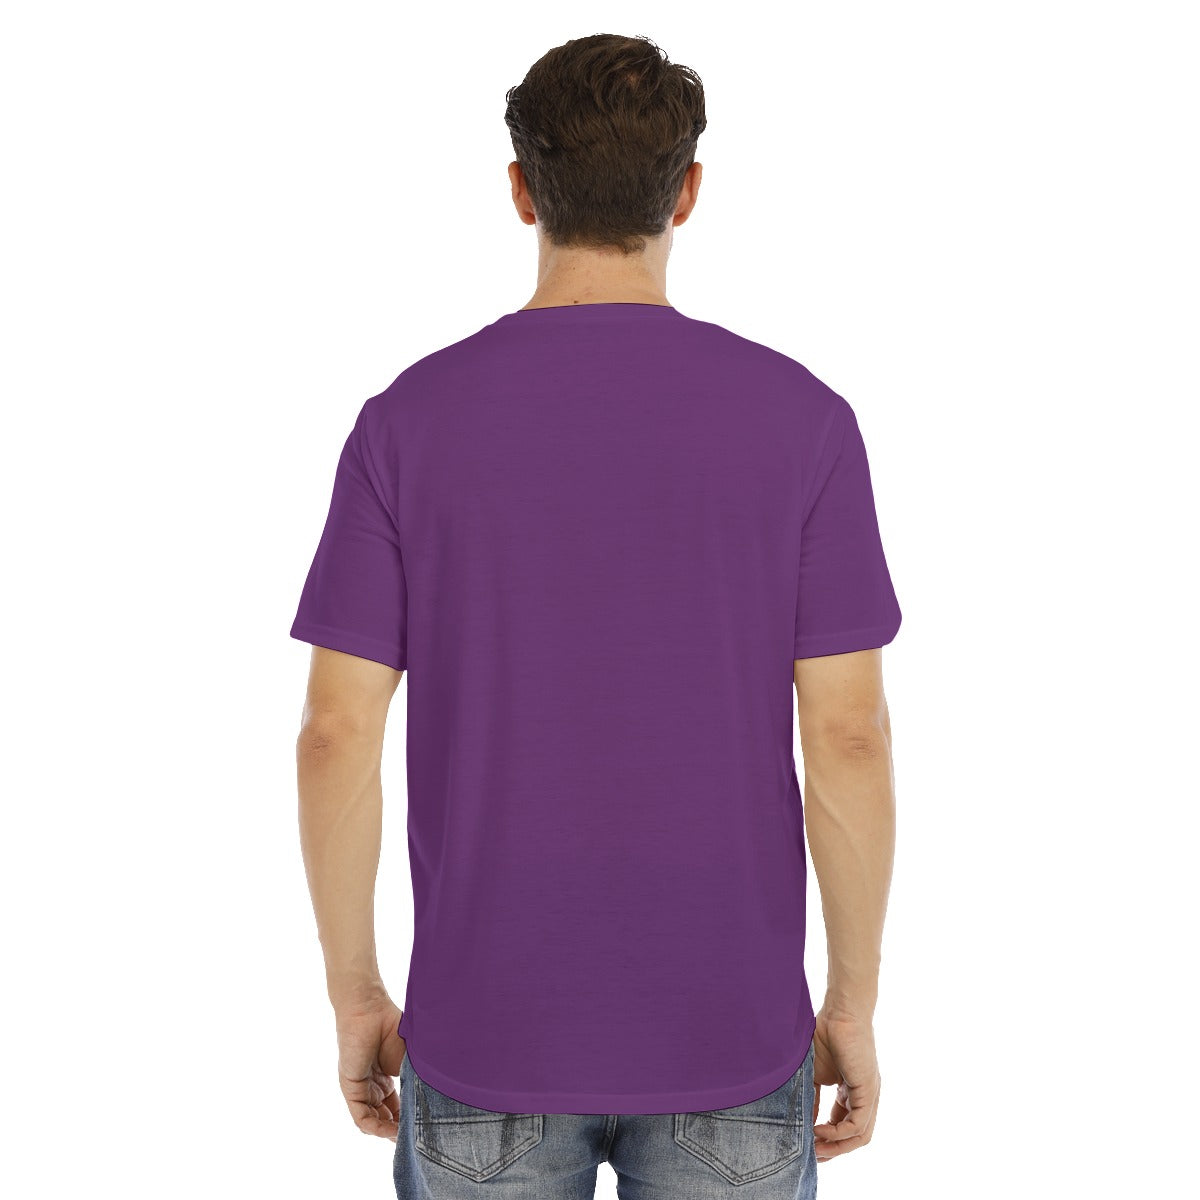 All-Over Print Men's Short Sleeve Rounded Hem T-shirt